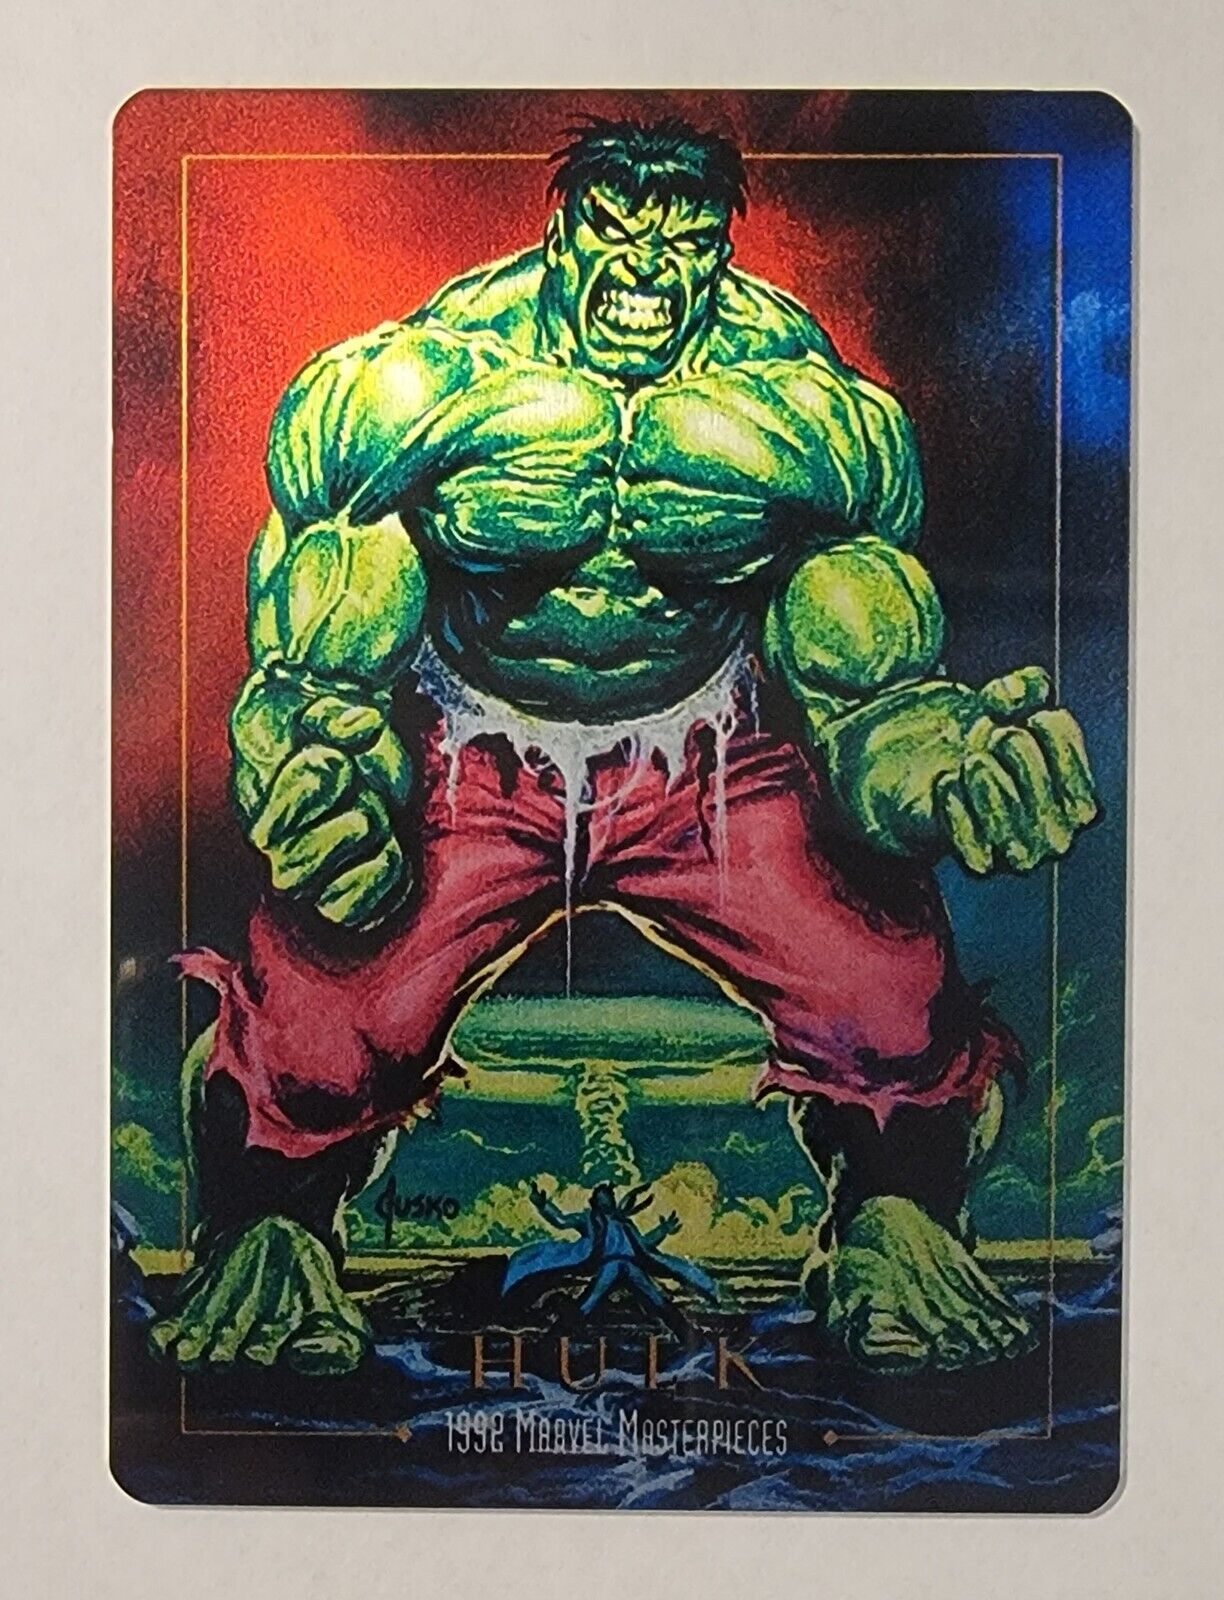 2023 1992 Marvel Masterpieces Metal Hulk Card FPG Jusko Kickstarter /2000